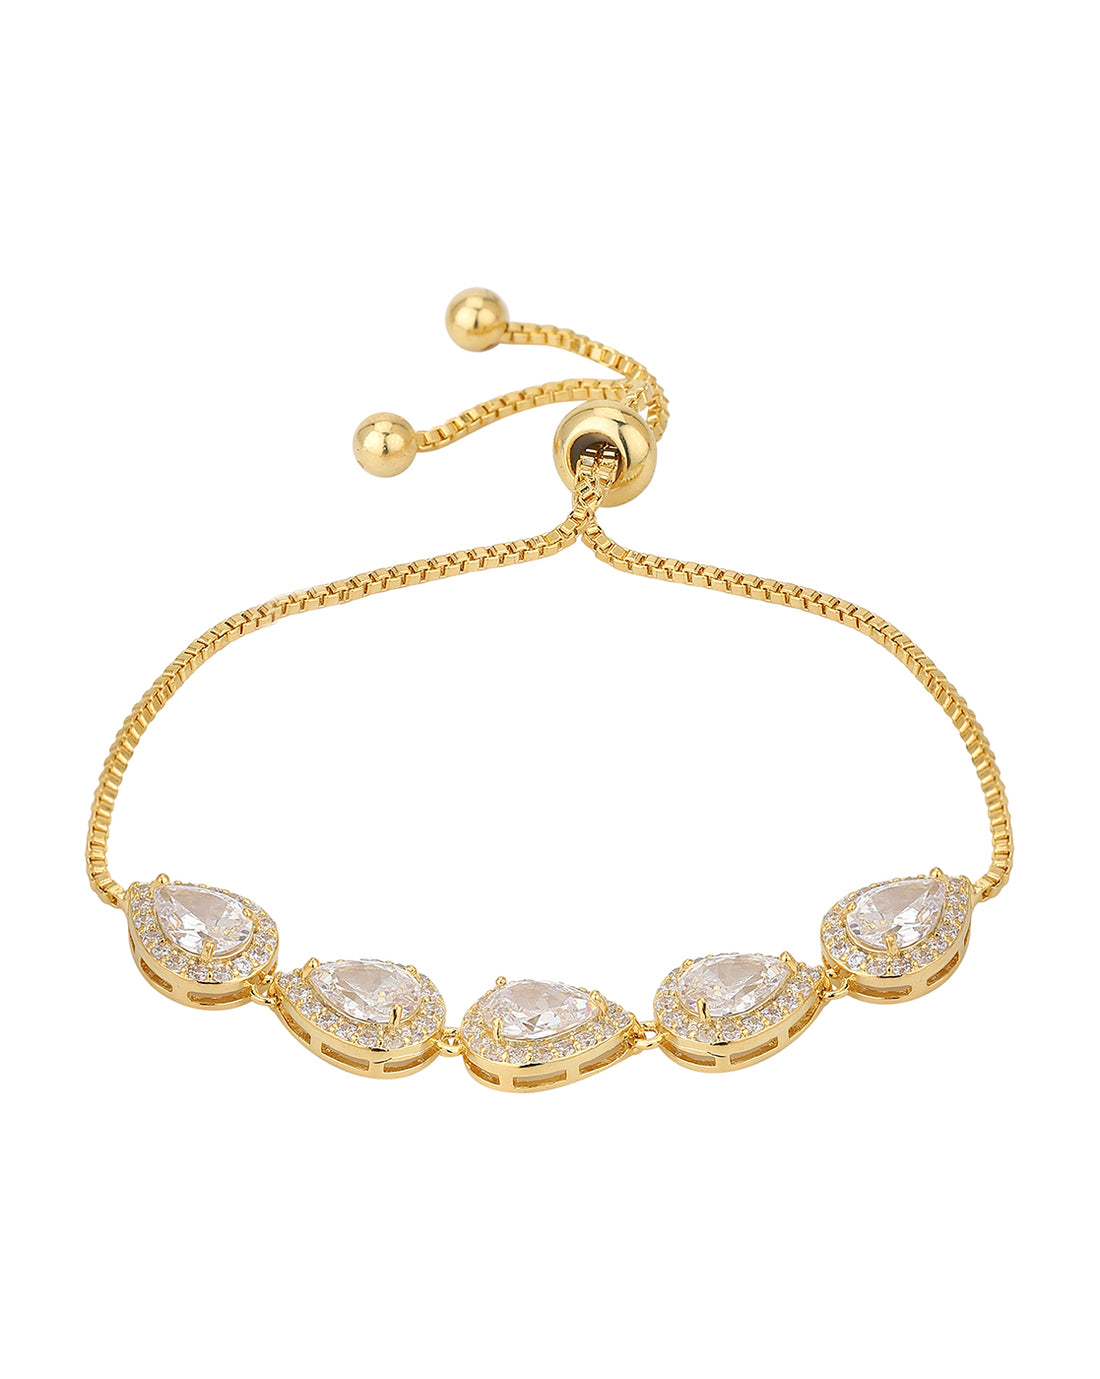 Carlton London Gold Plated Cz Studded Charms Bracelet